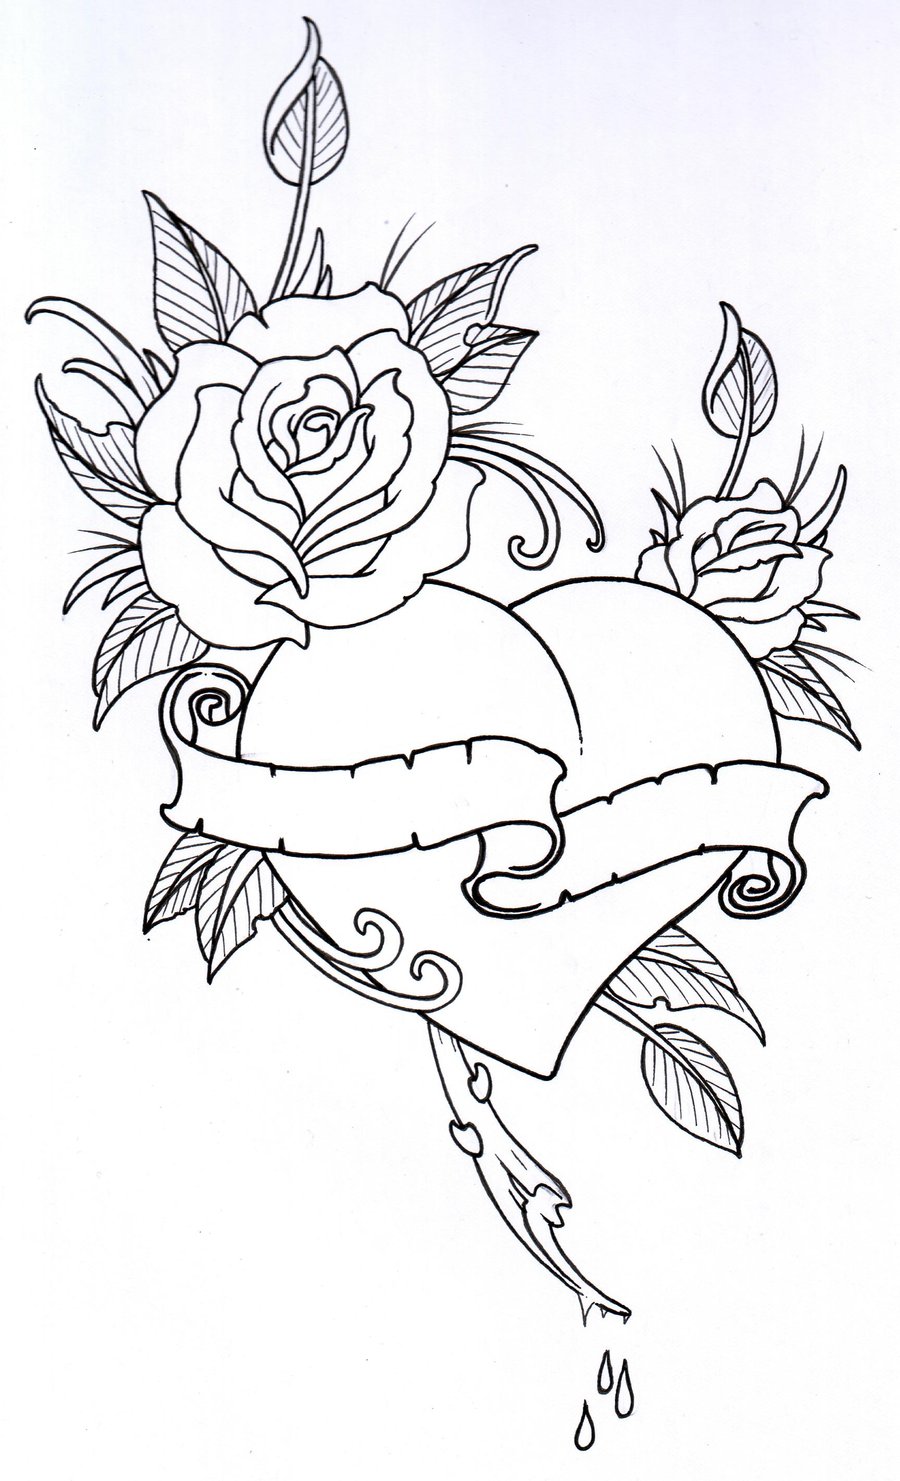 rose-drawing-outline-floweryweb1